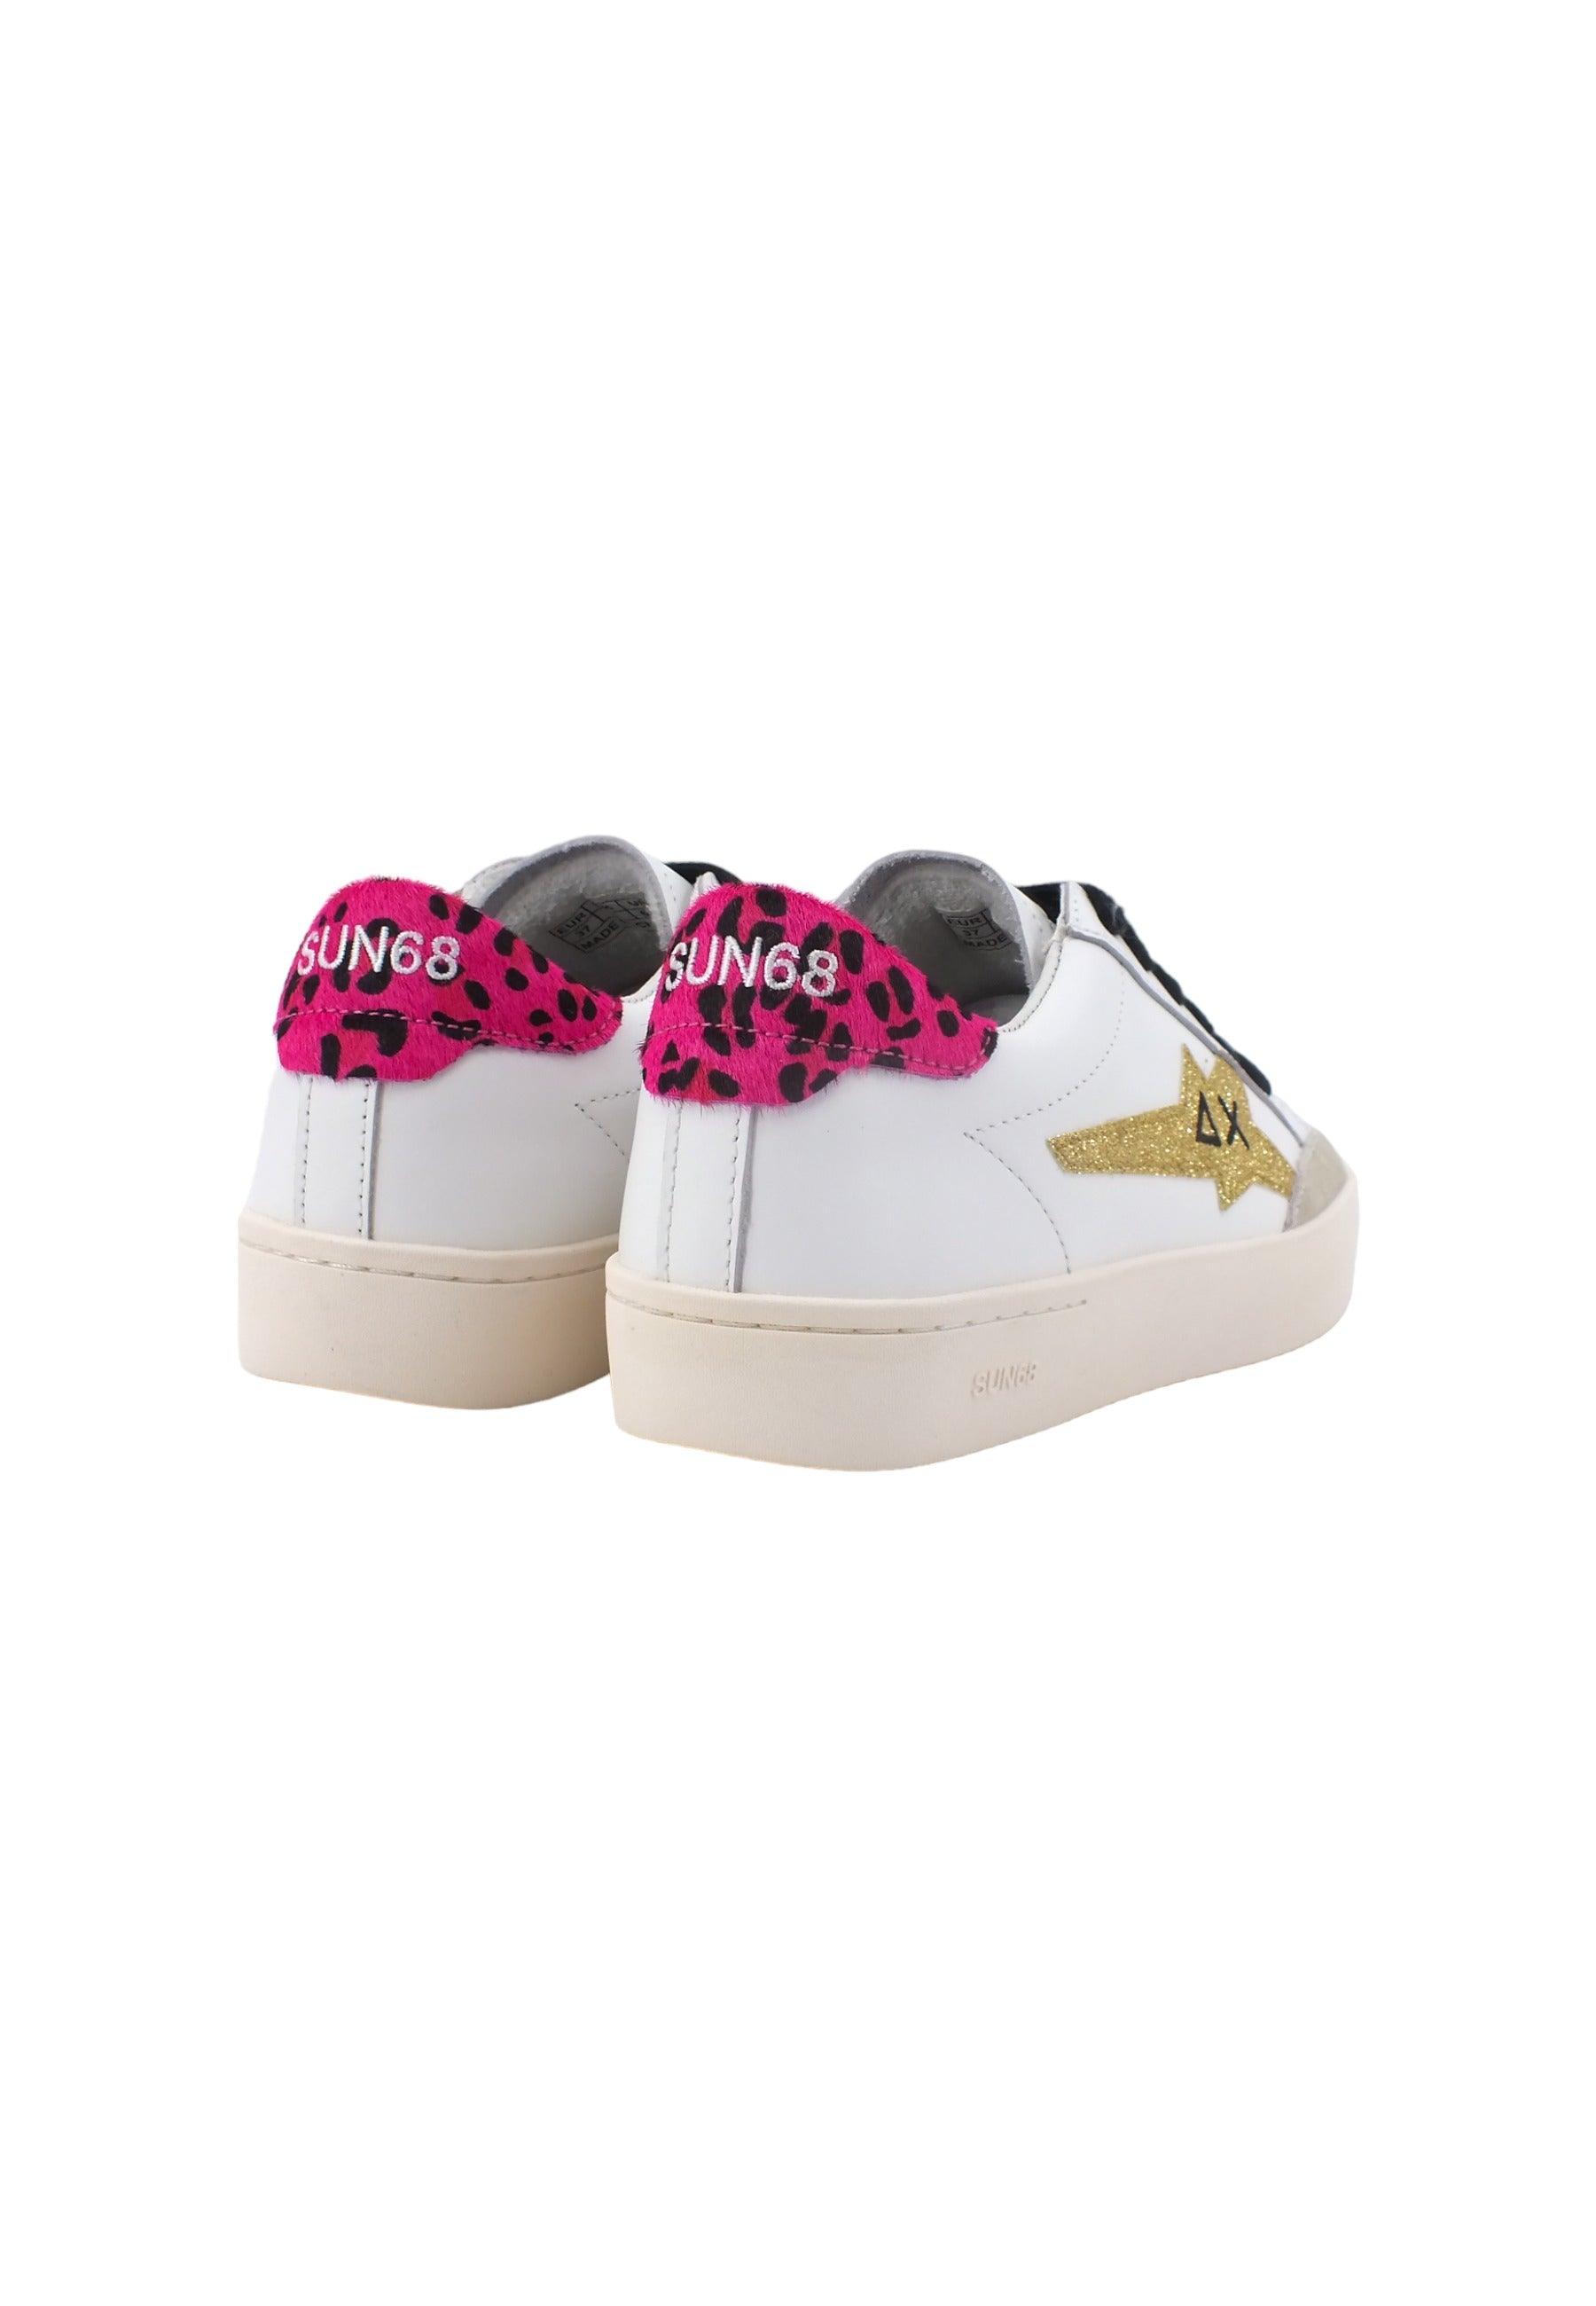 SUN68 Katy Leather Sneaker Donna Bianco Oro Z43221 - Sandrini Calzature e Abbigliamento